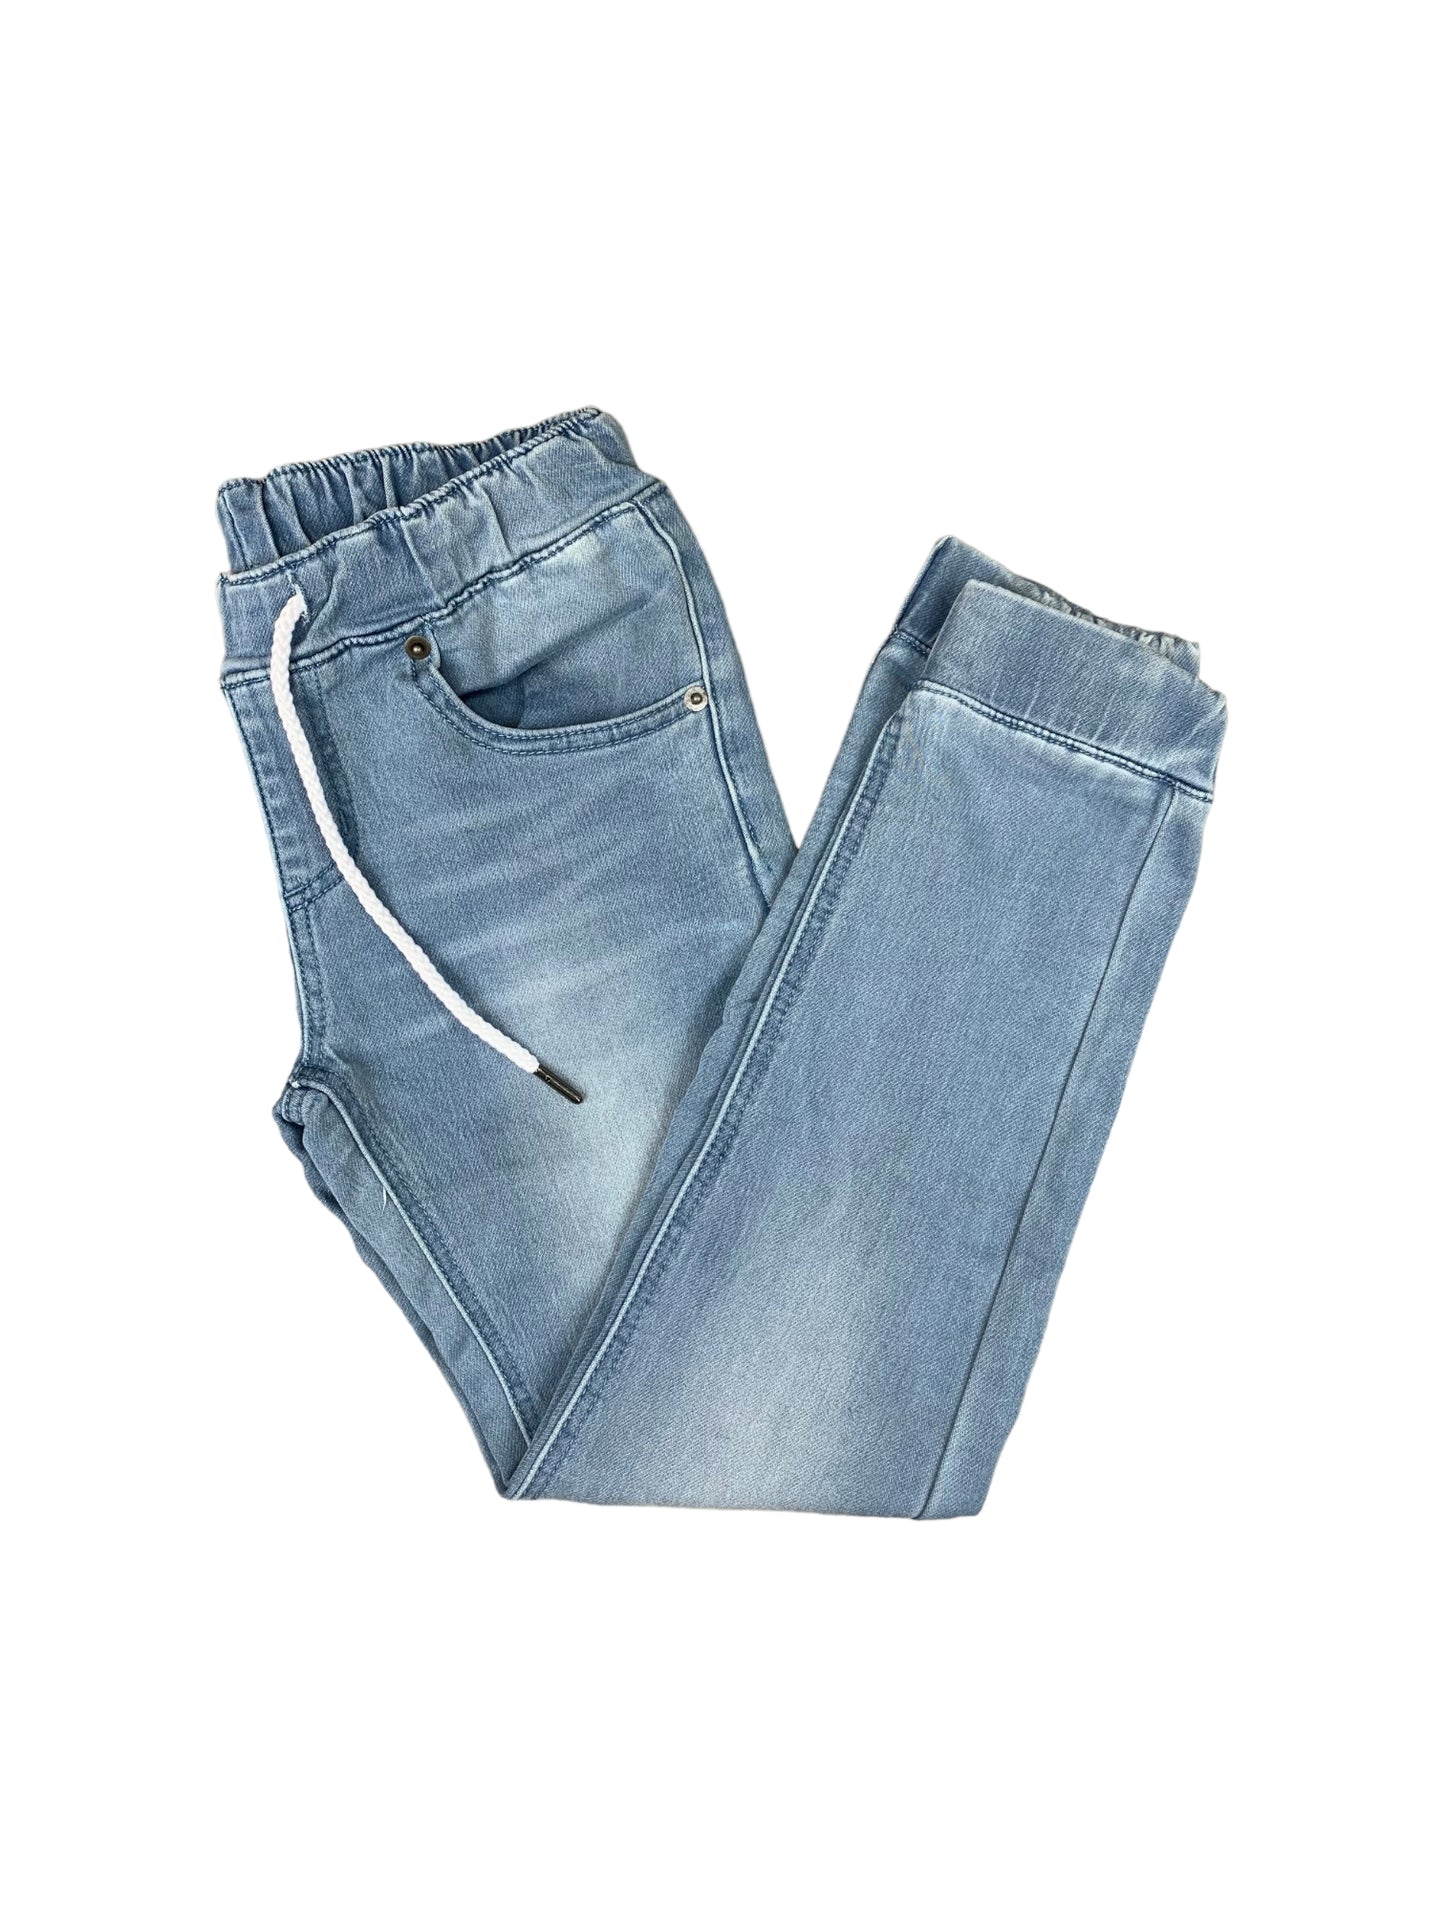 Jogger jeans bleu délavé pour garçon.  5 poches et cordon d'ajustement à la taille.